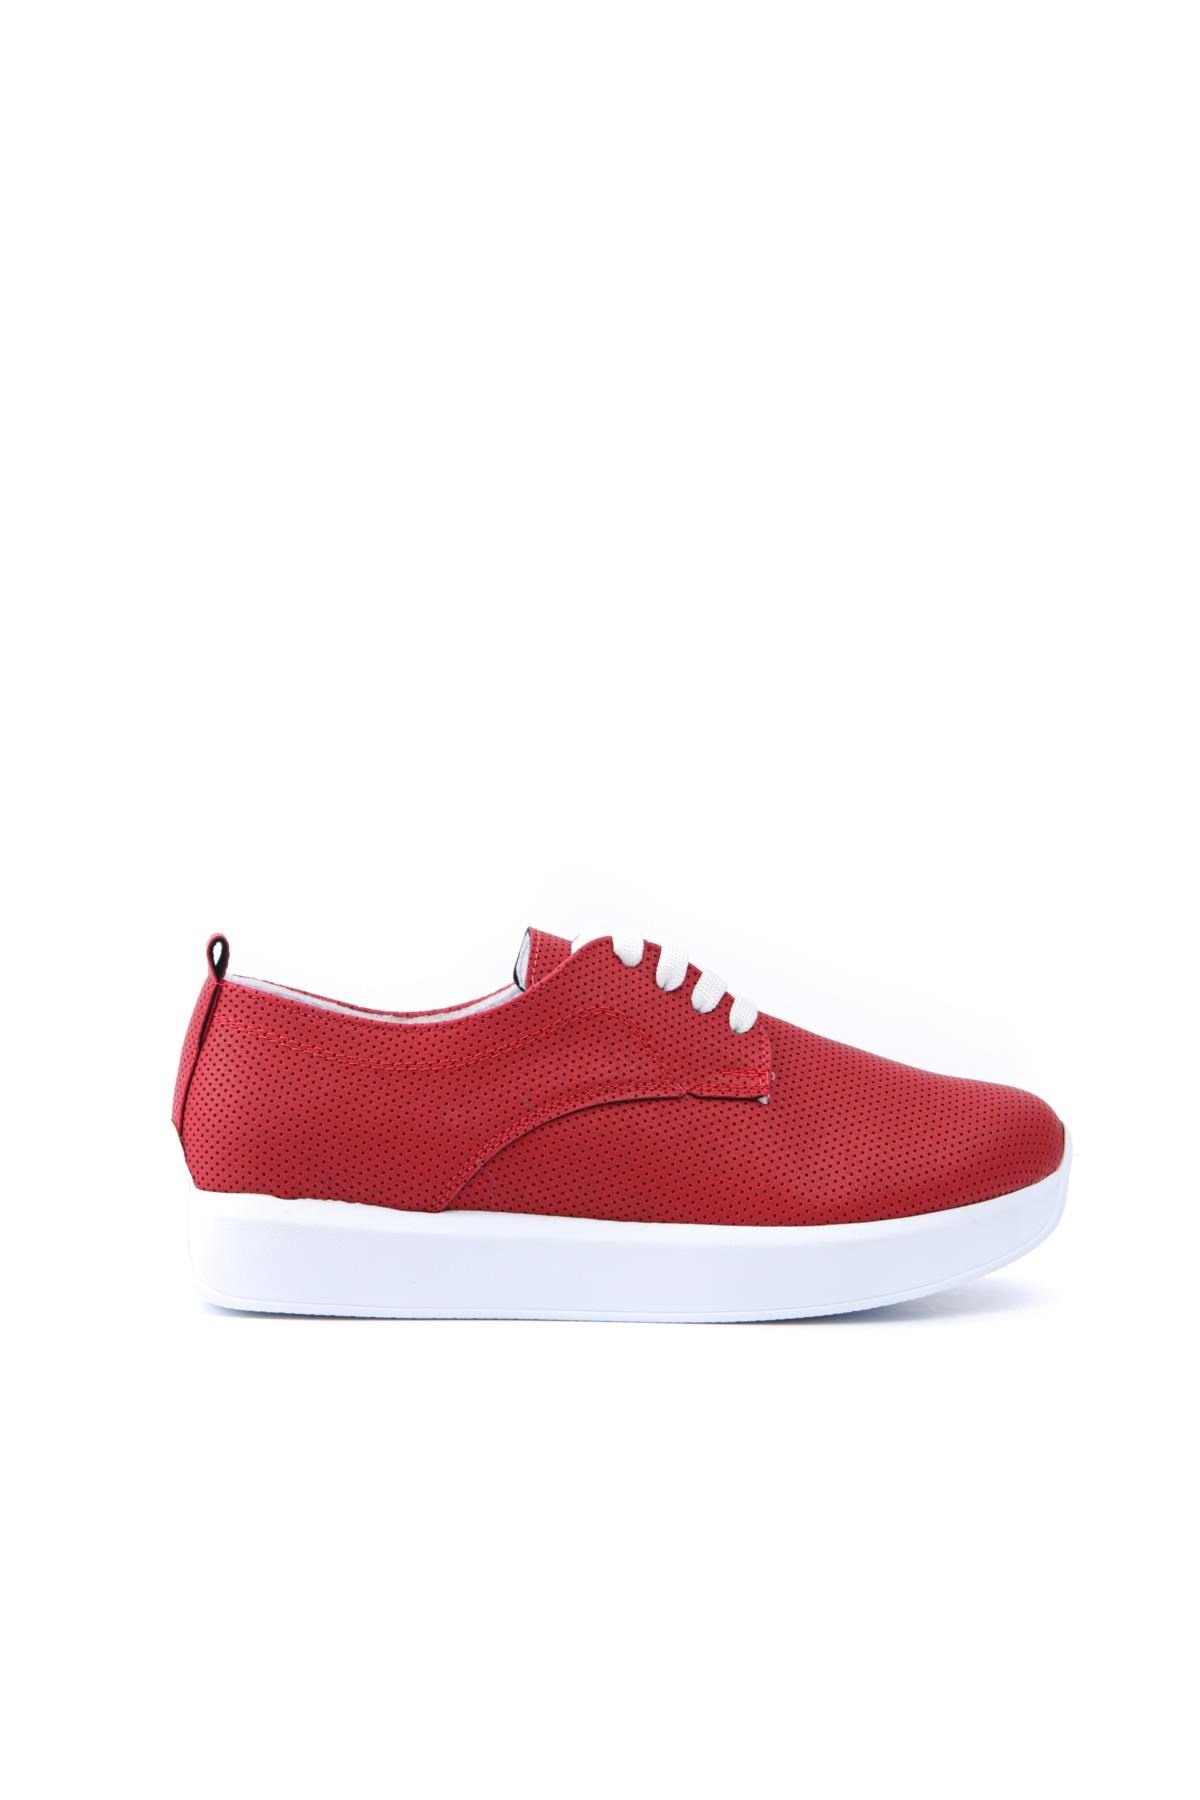 Jess Kırmızı Bağcıklı Düz Sneakers Spor Ayakkabı